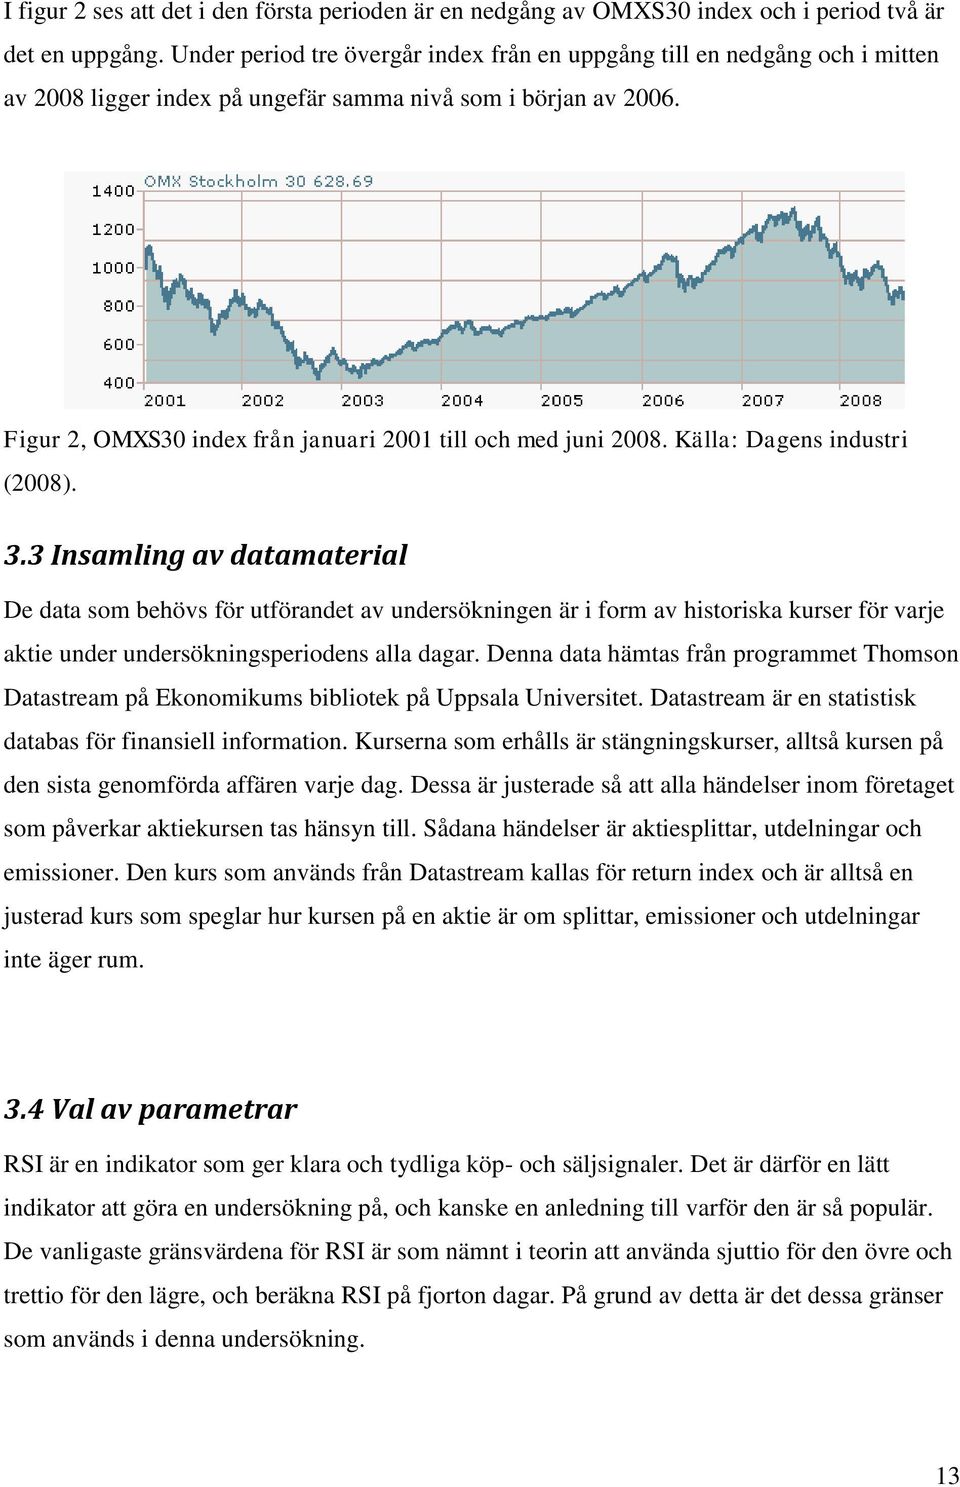 Figur 2, OMXS30 index från januari 2001 till och med juni 2008. Källa: Dagens industri (2008). 3.